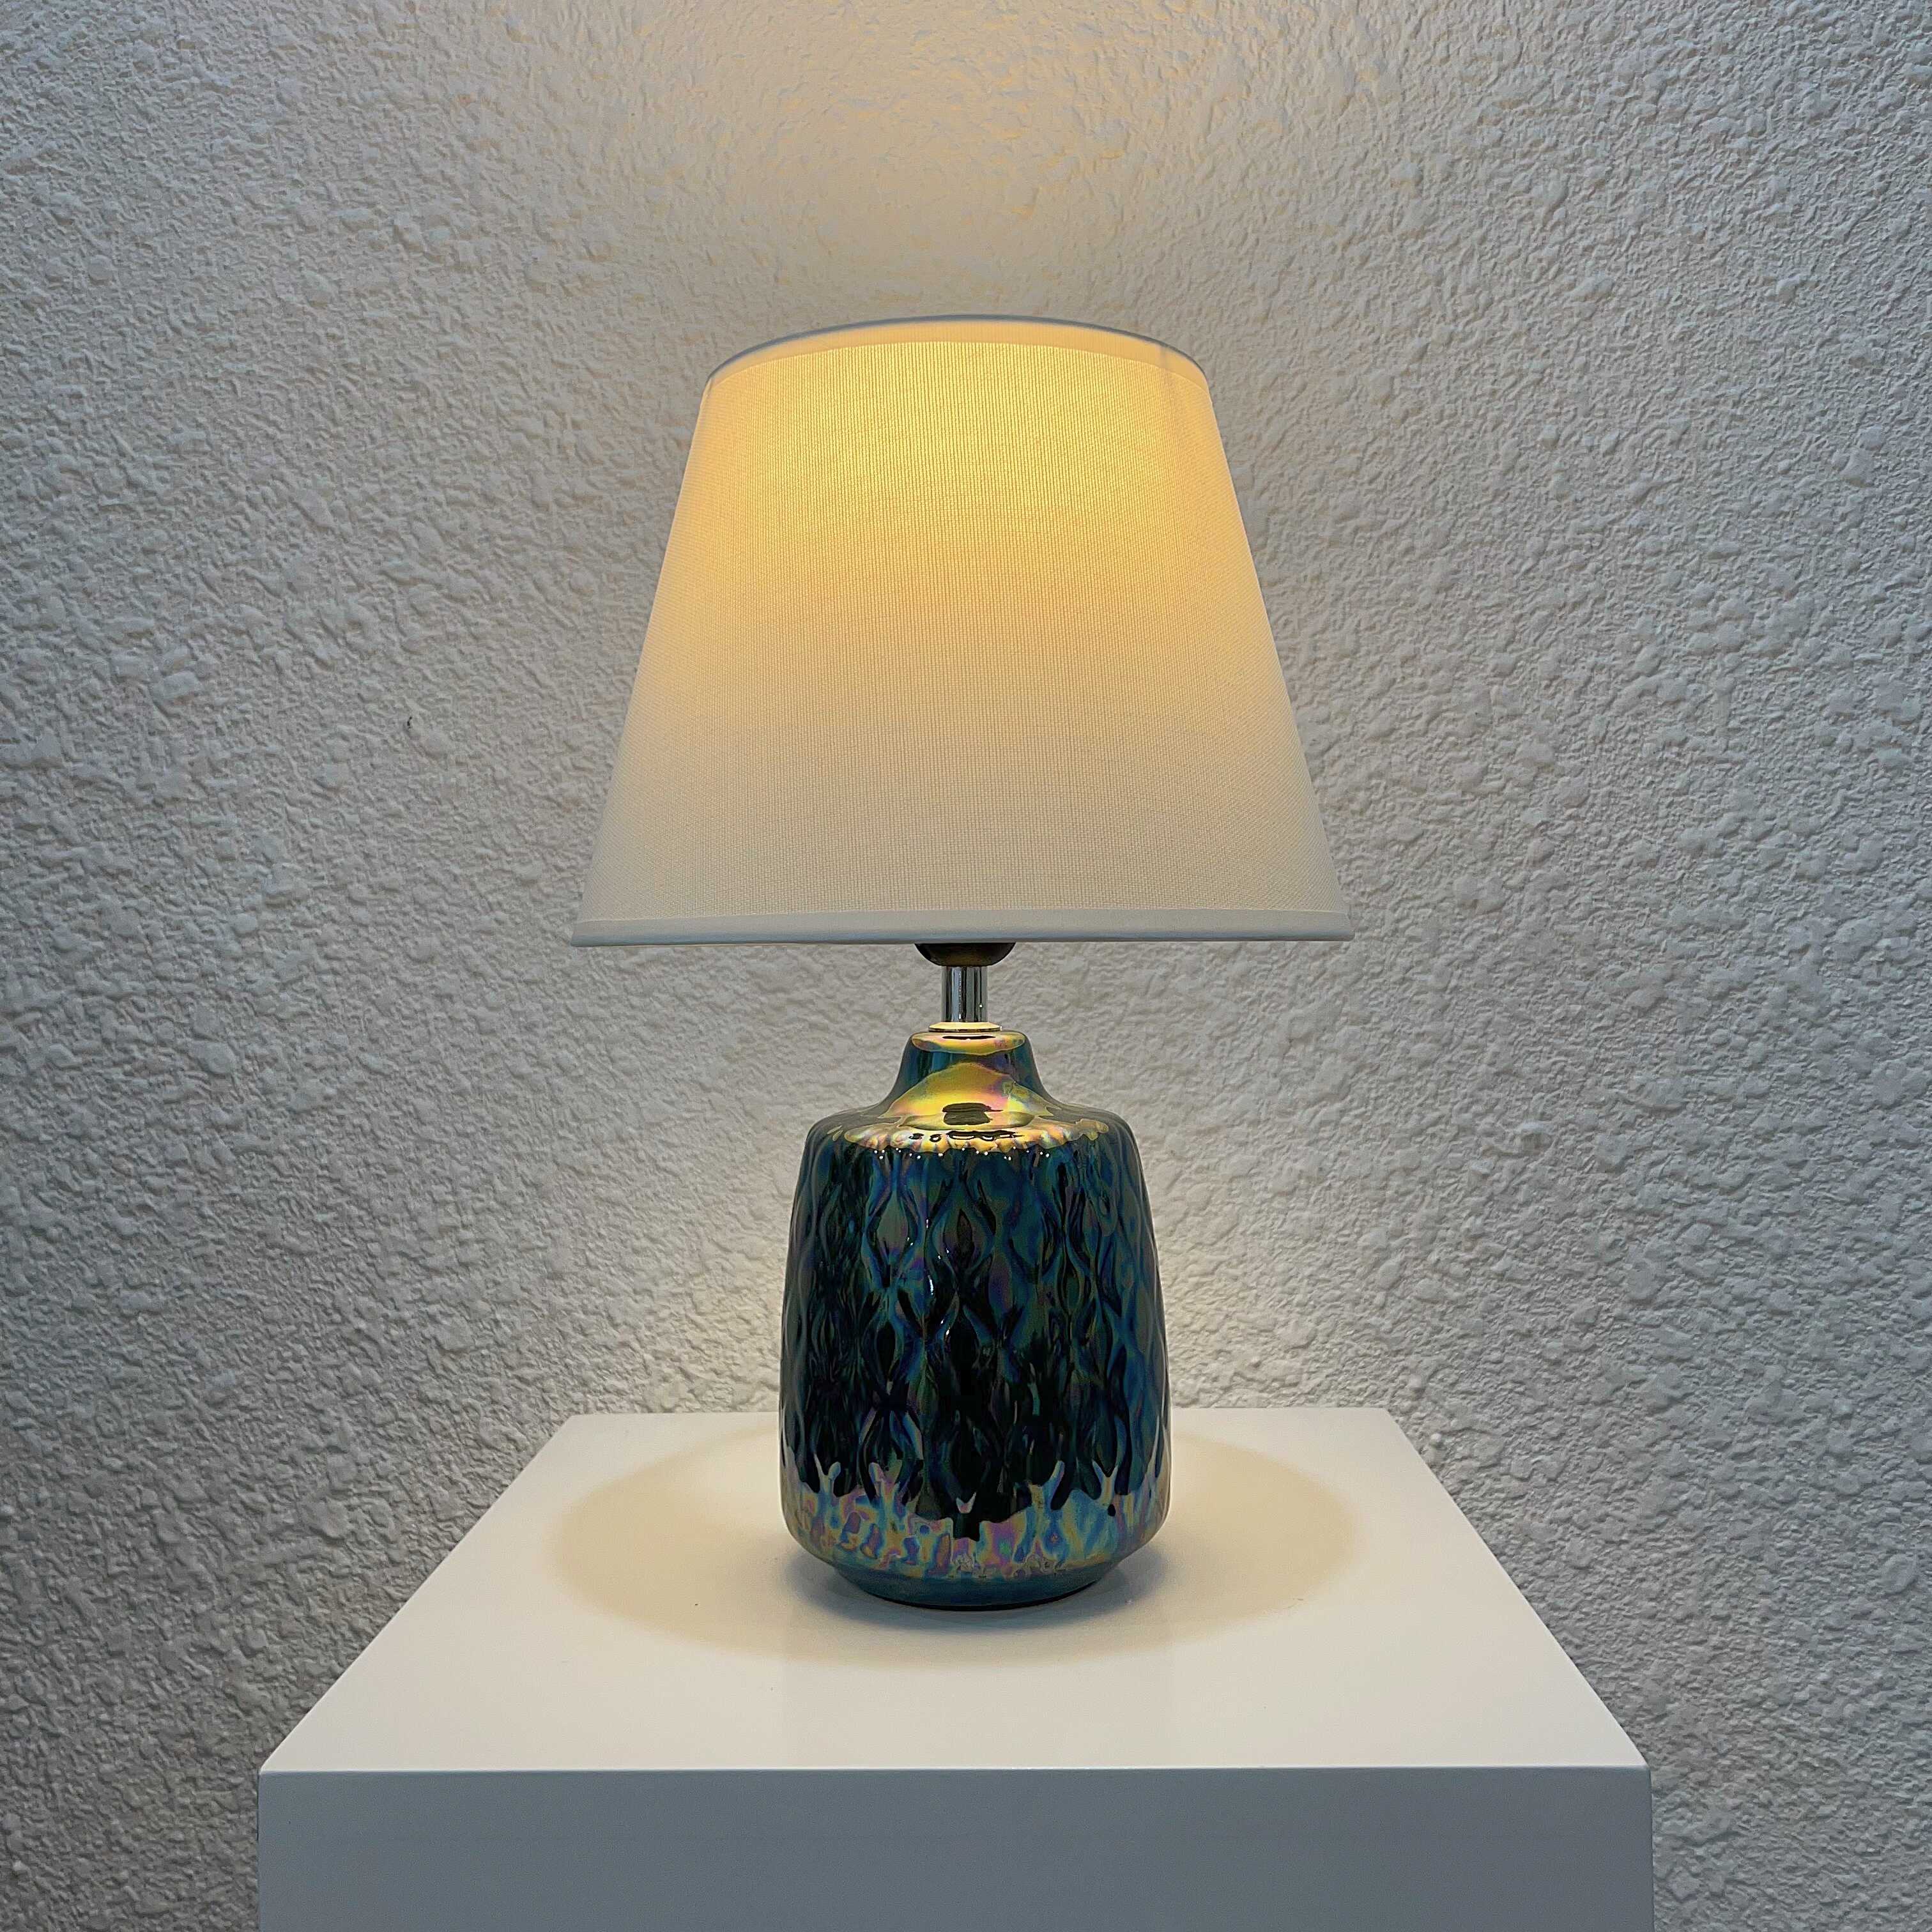 [HOT NEW] Đèn bàn đèn ngủ gốm sứ thủ công cao cấp màu xanh phủ bóng ngọc trai sang trọng DBG023